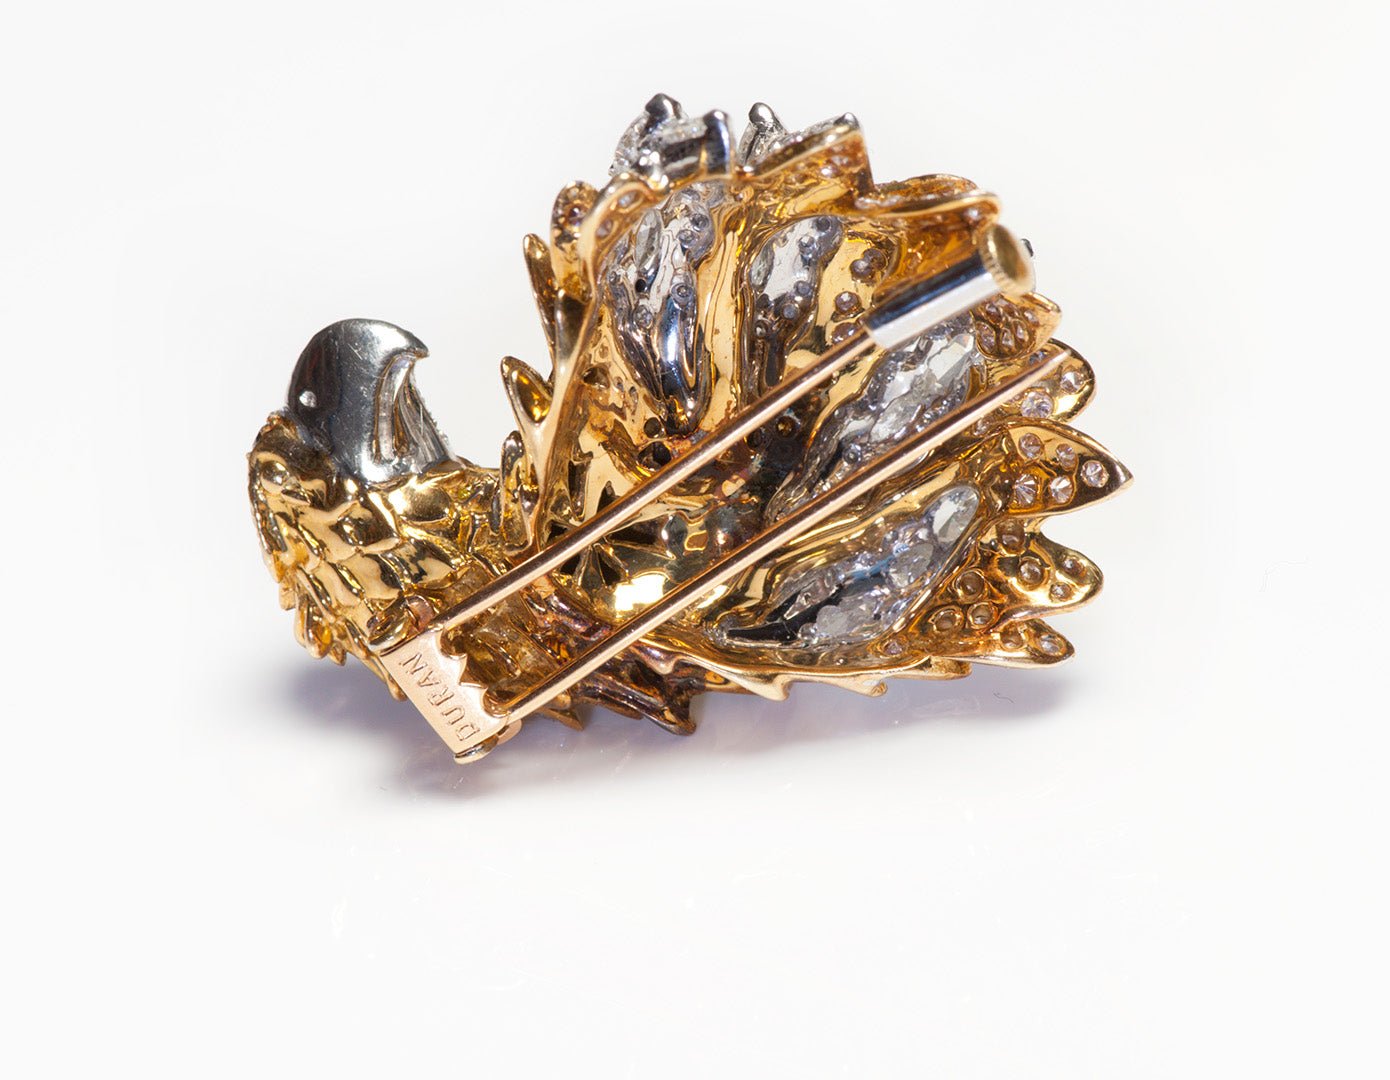 Eagle Fancy Diamond Gold Brooch Brooch by Duran